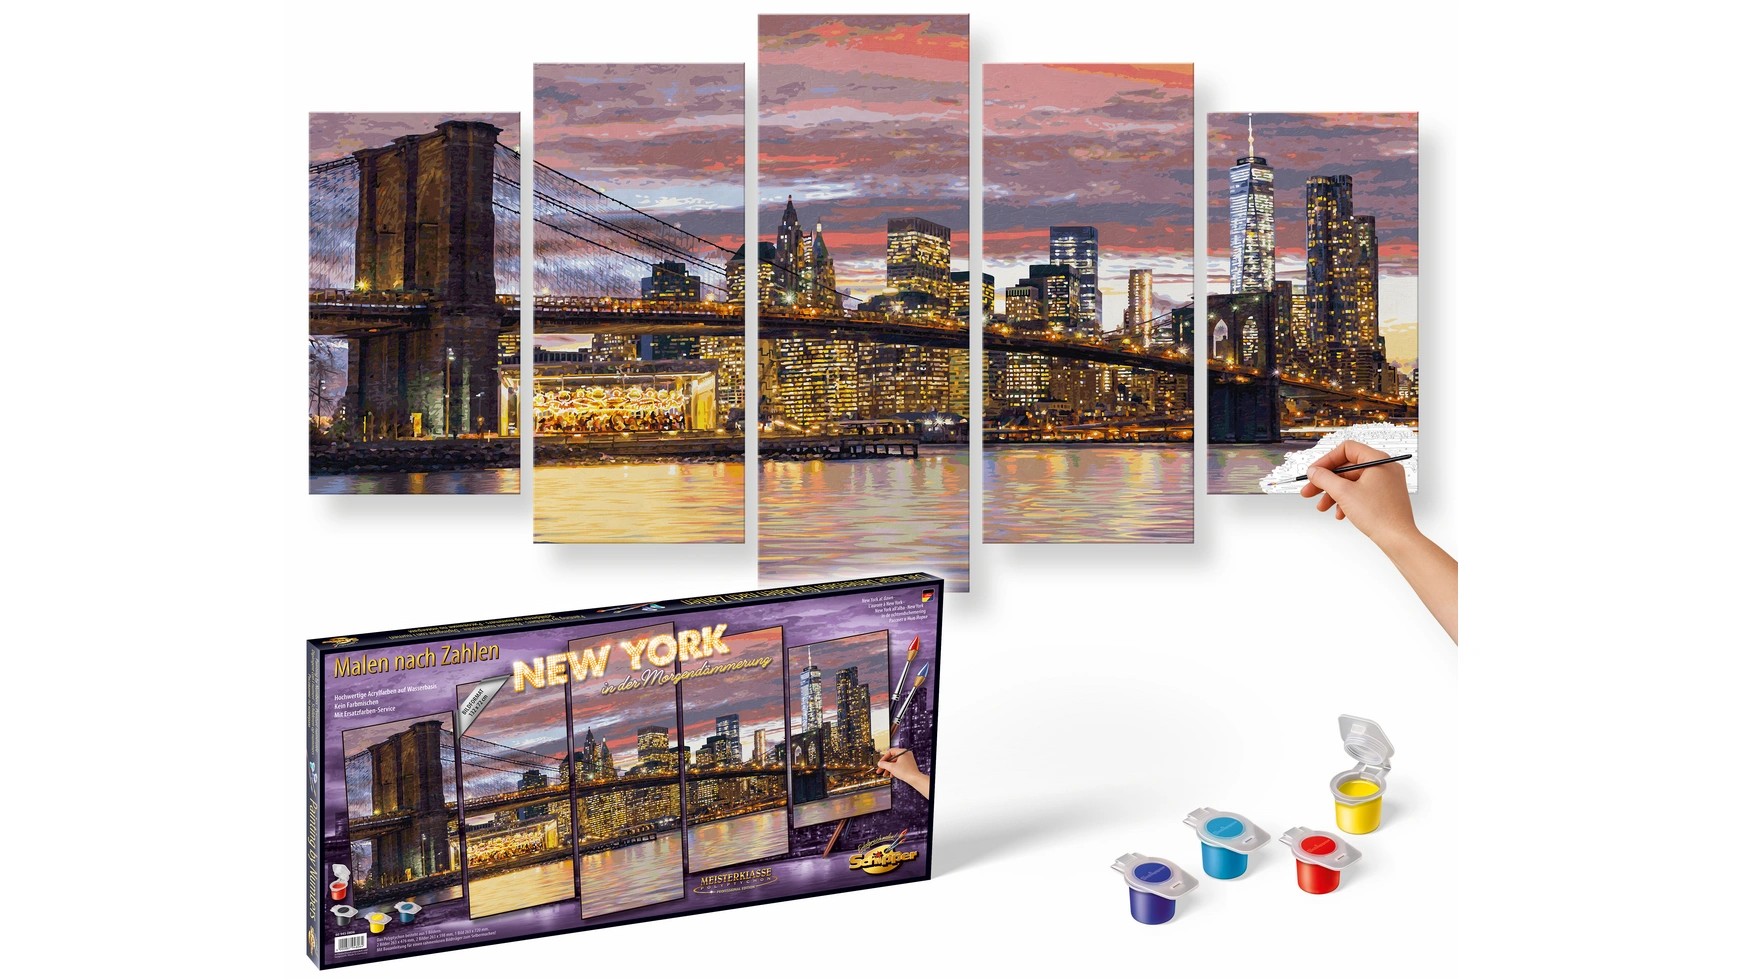 Картина Schipper по номерам Полиптих группы мотивов Нью-Йорк на рассвете (Полиптих) картина по номерам schipper полиптих не мечтай делай 132x72 см